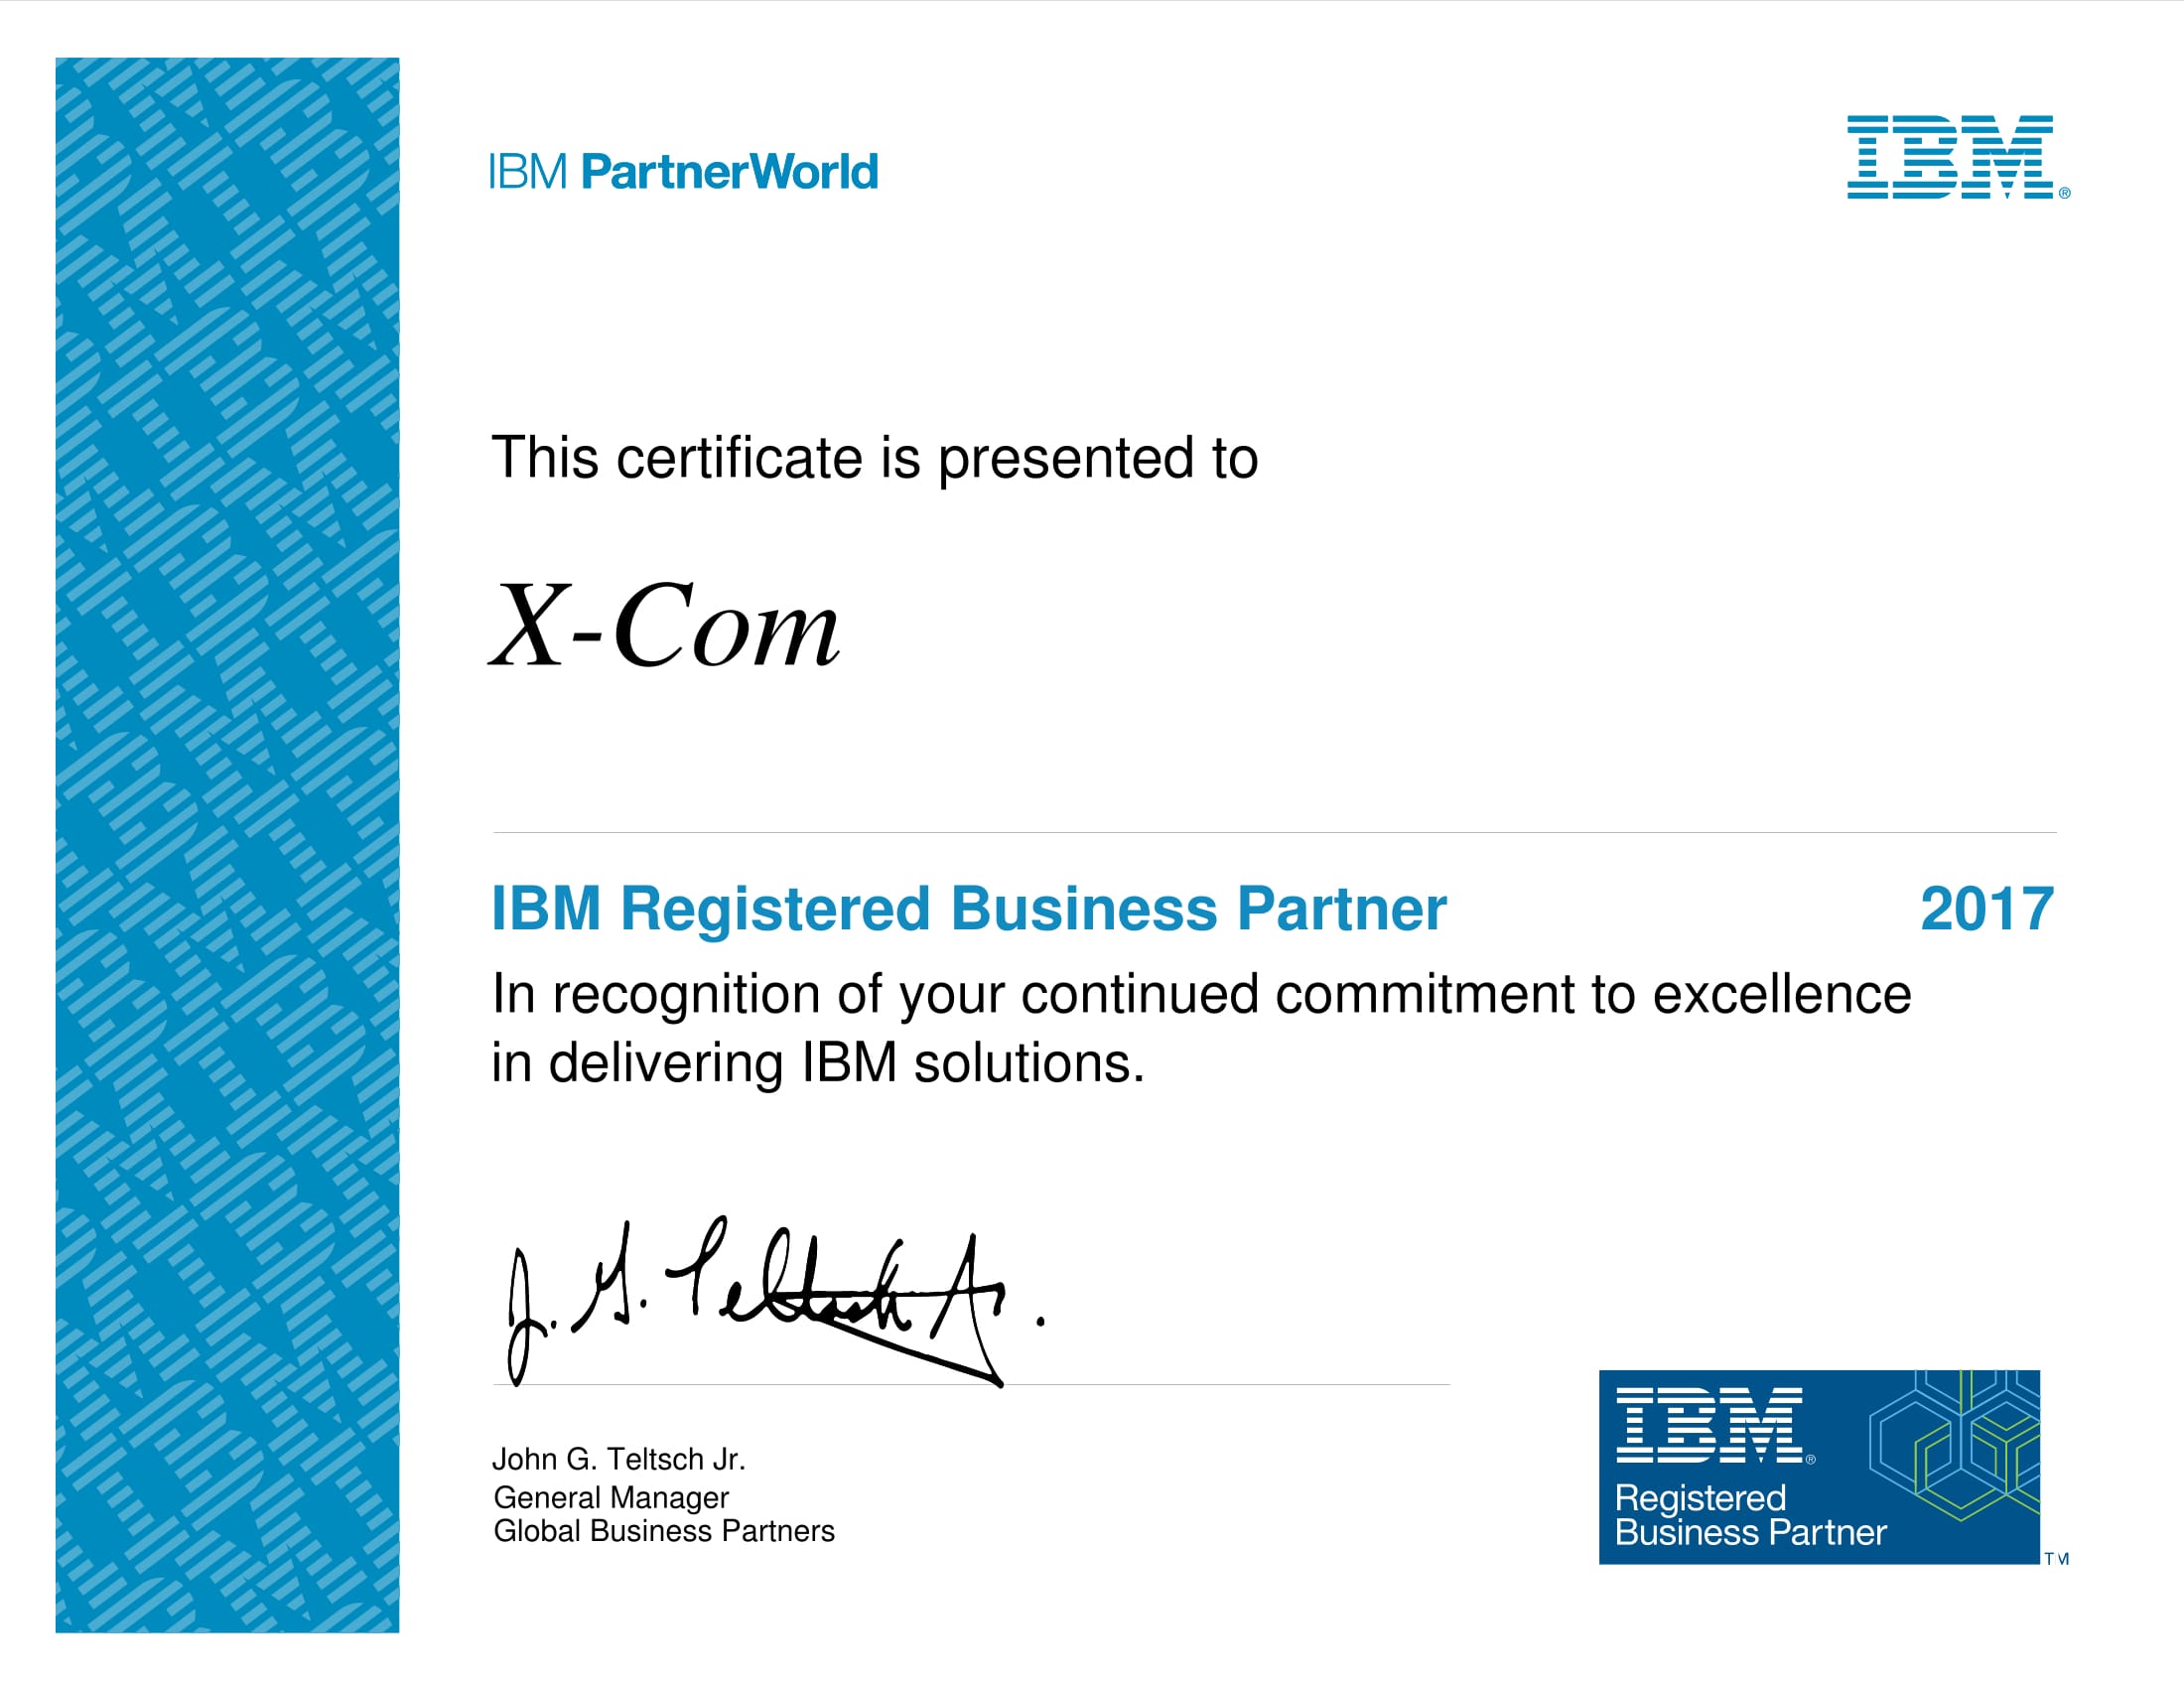 X-Com - Registered Business Partner компании IBM